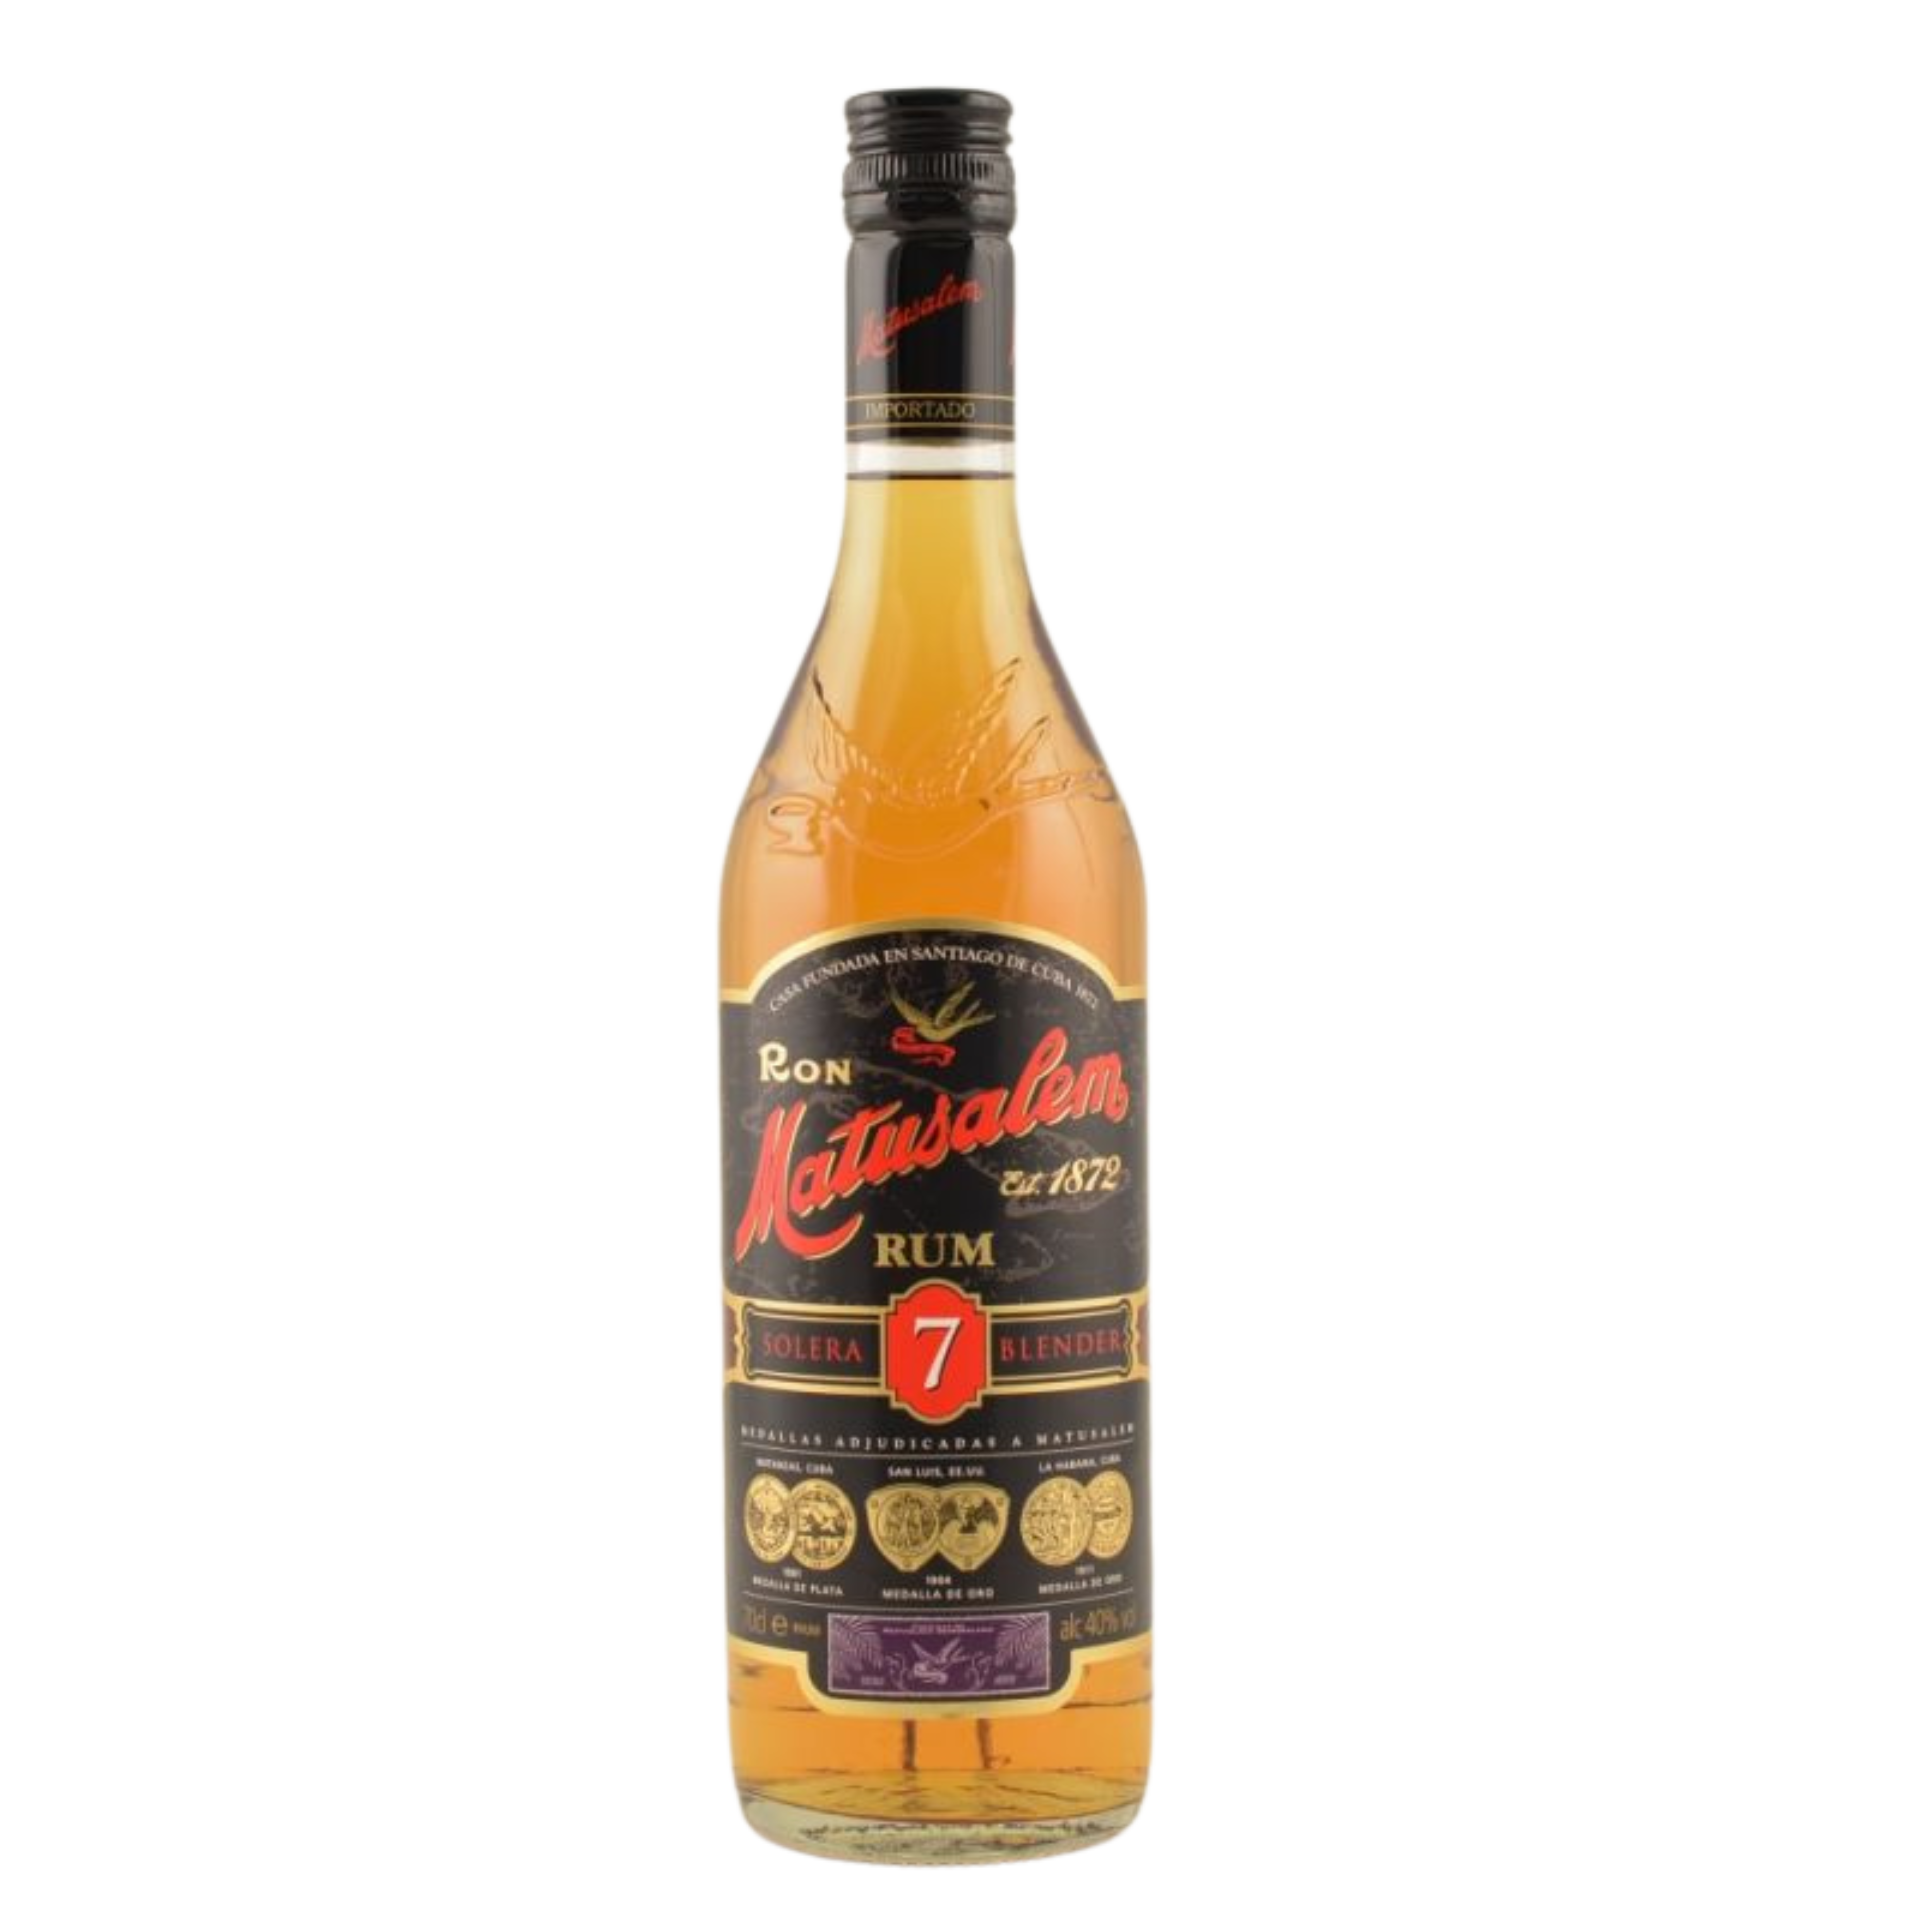 Matusalem Solera 7 Rum 40% 0,7l